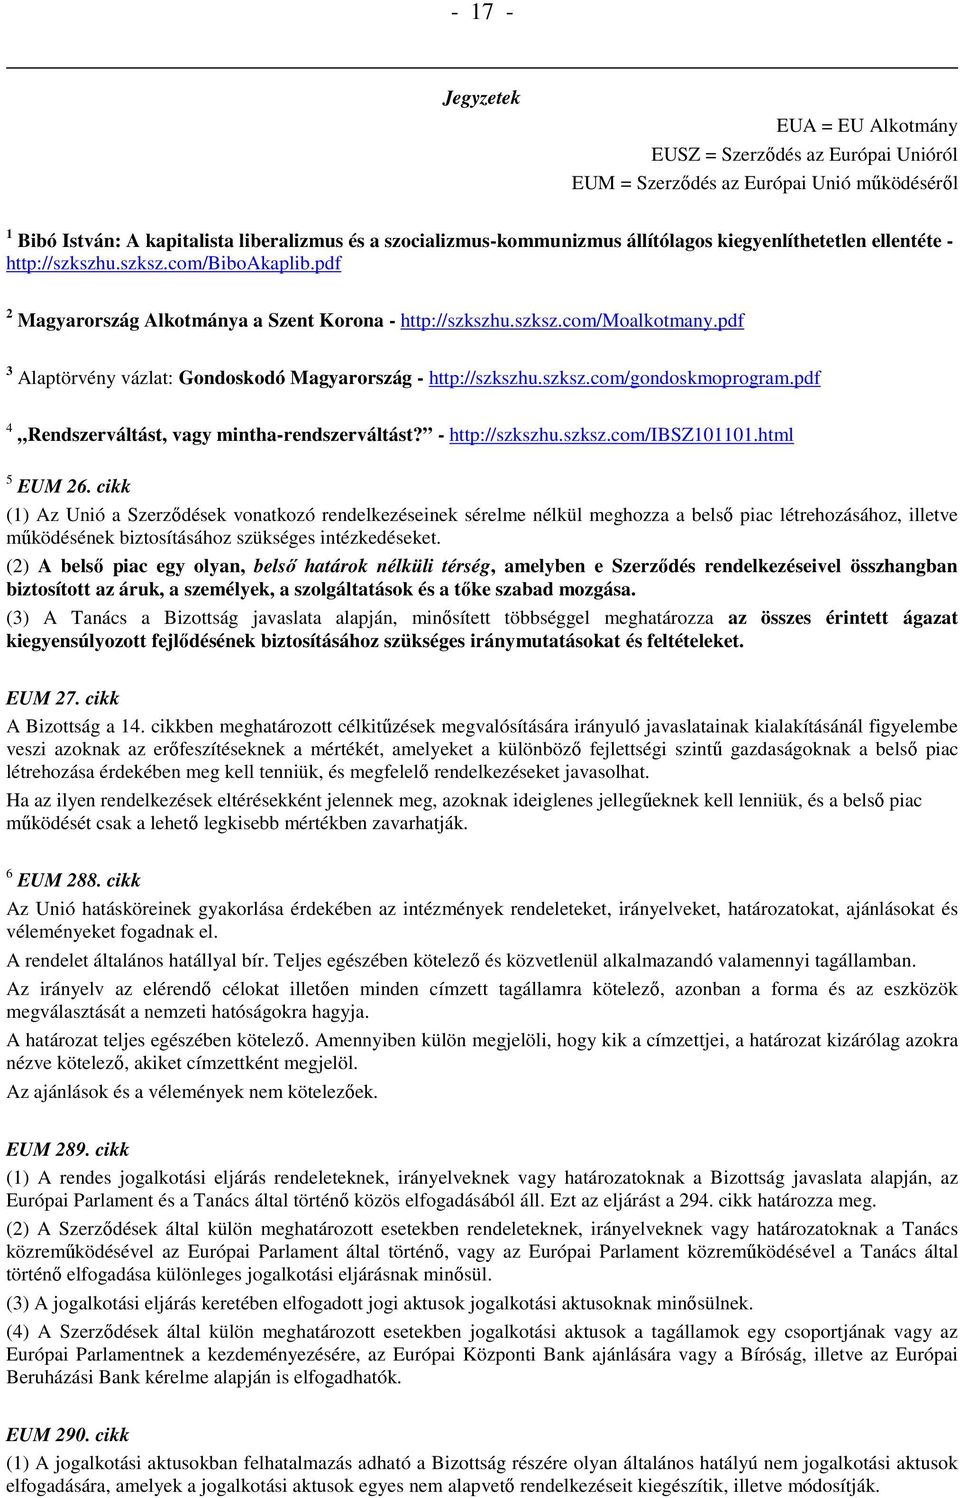 pdf 3 Alaptörvény vázlat: Gondoskodó Magyarország - http://szkszhu.szksz.com/gondoskmoprogram.pdf 4 Rendszerváltást, vagy mintha-rendszerváltást? - http://szkszhu.szksz.com/ibsz101101.html 5 EUM 26.